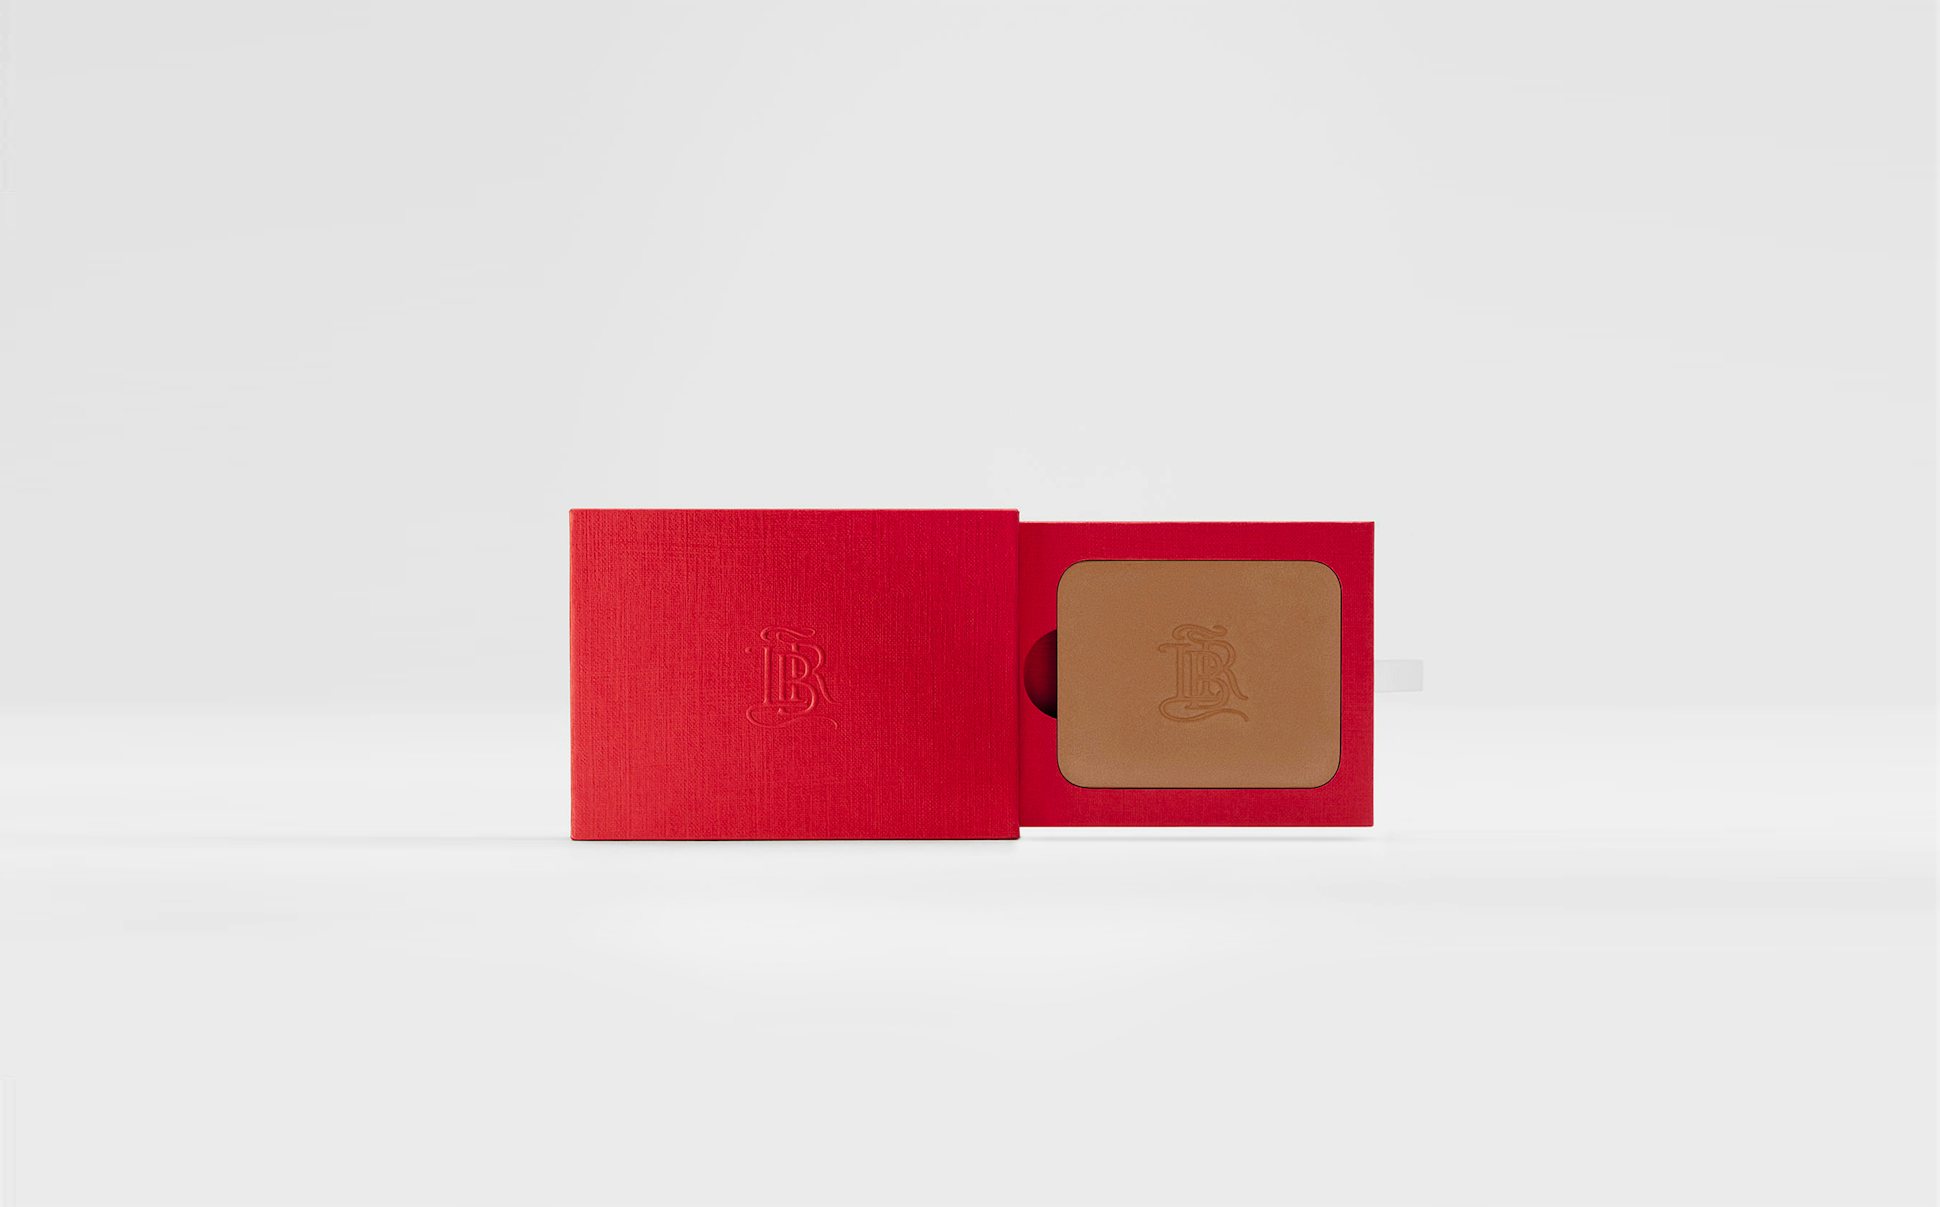 La bouche rouge La Terre Intense bronzer in the red paper case